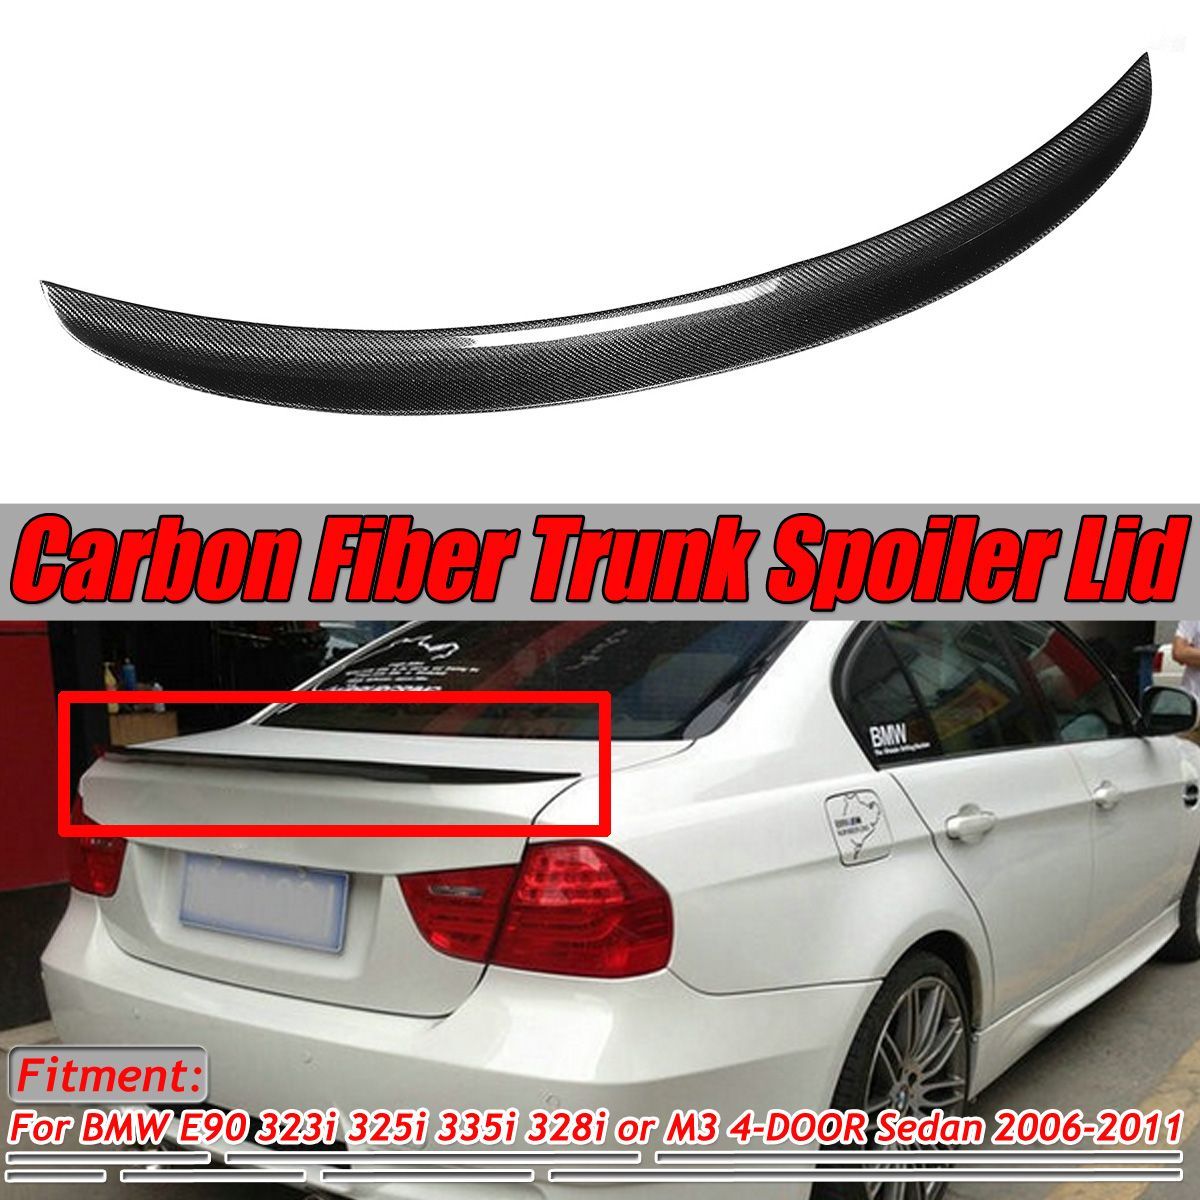 Real-Carbon-Fiber-Trunk-Spoiler-Wing-Lid-For-BMW-E90-323i-325i-335i-328i-M3-4-Door-Sedan-2006-2011-1697918